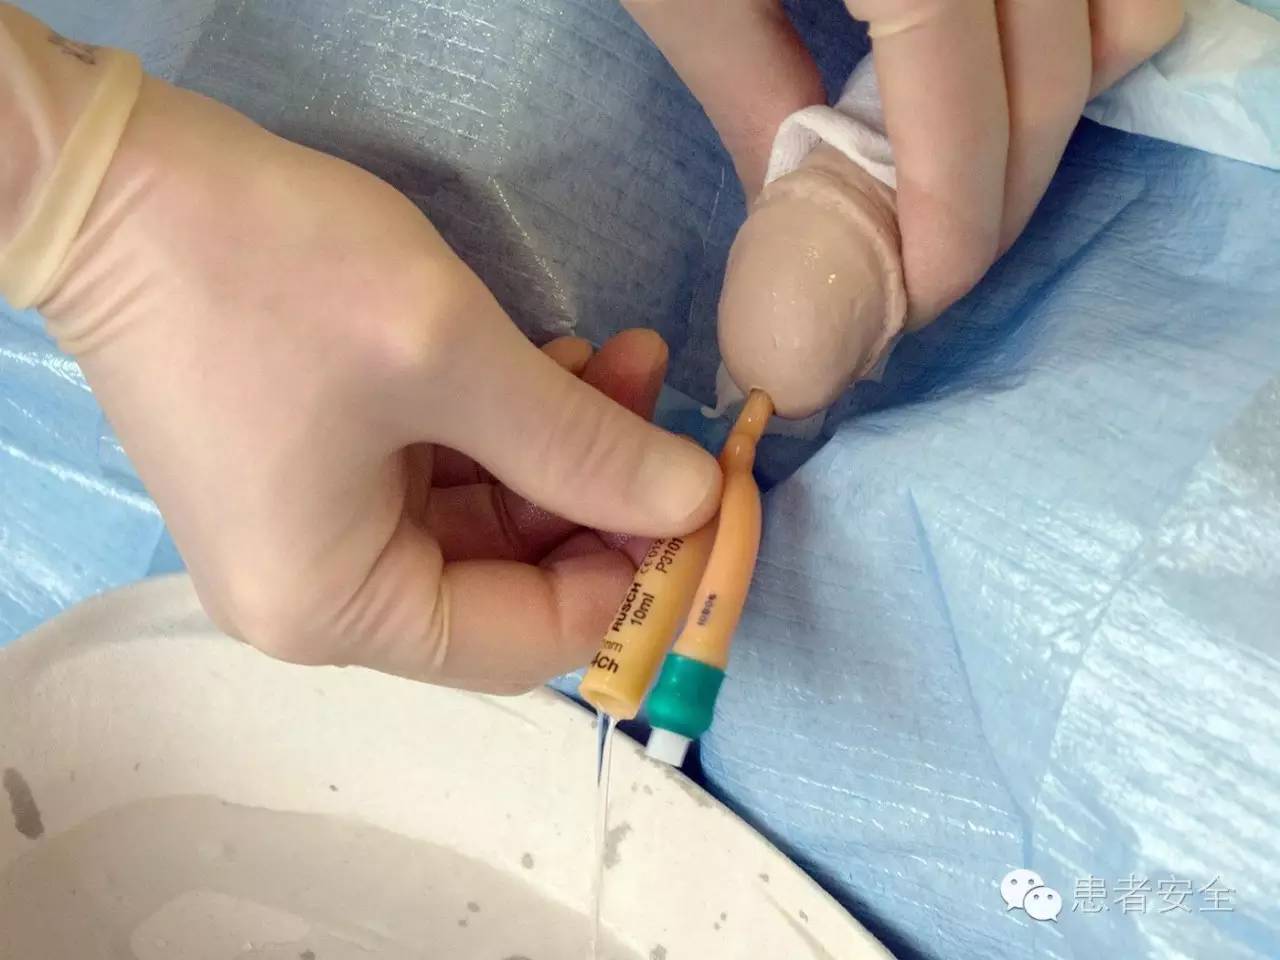 患者安全运用cusp工具包降低导尿管相关尿路感染